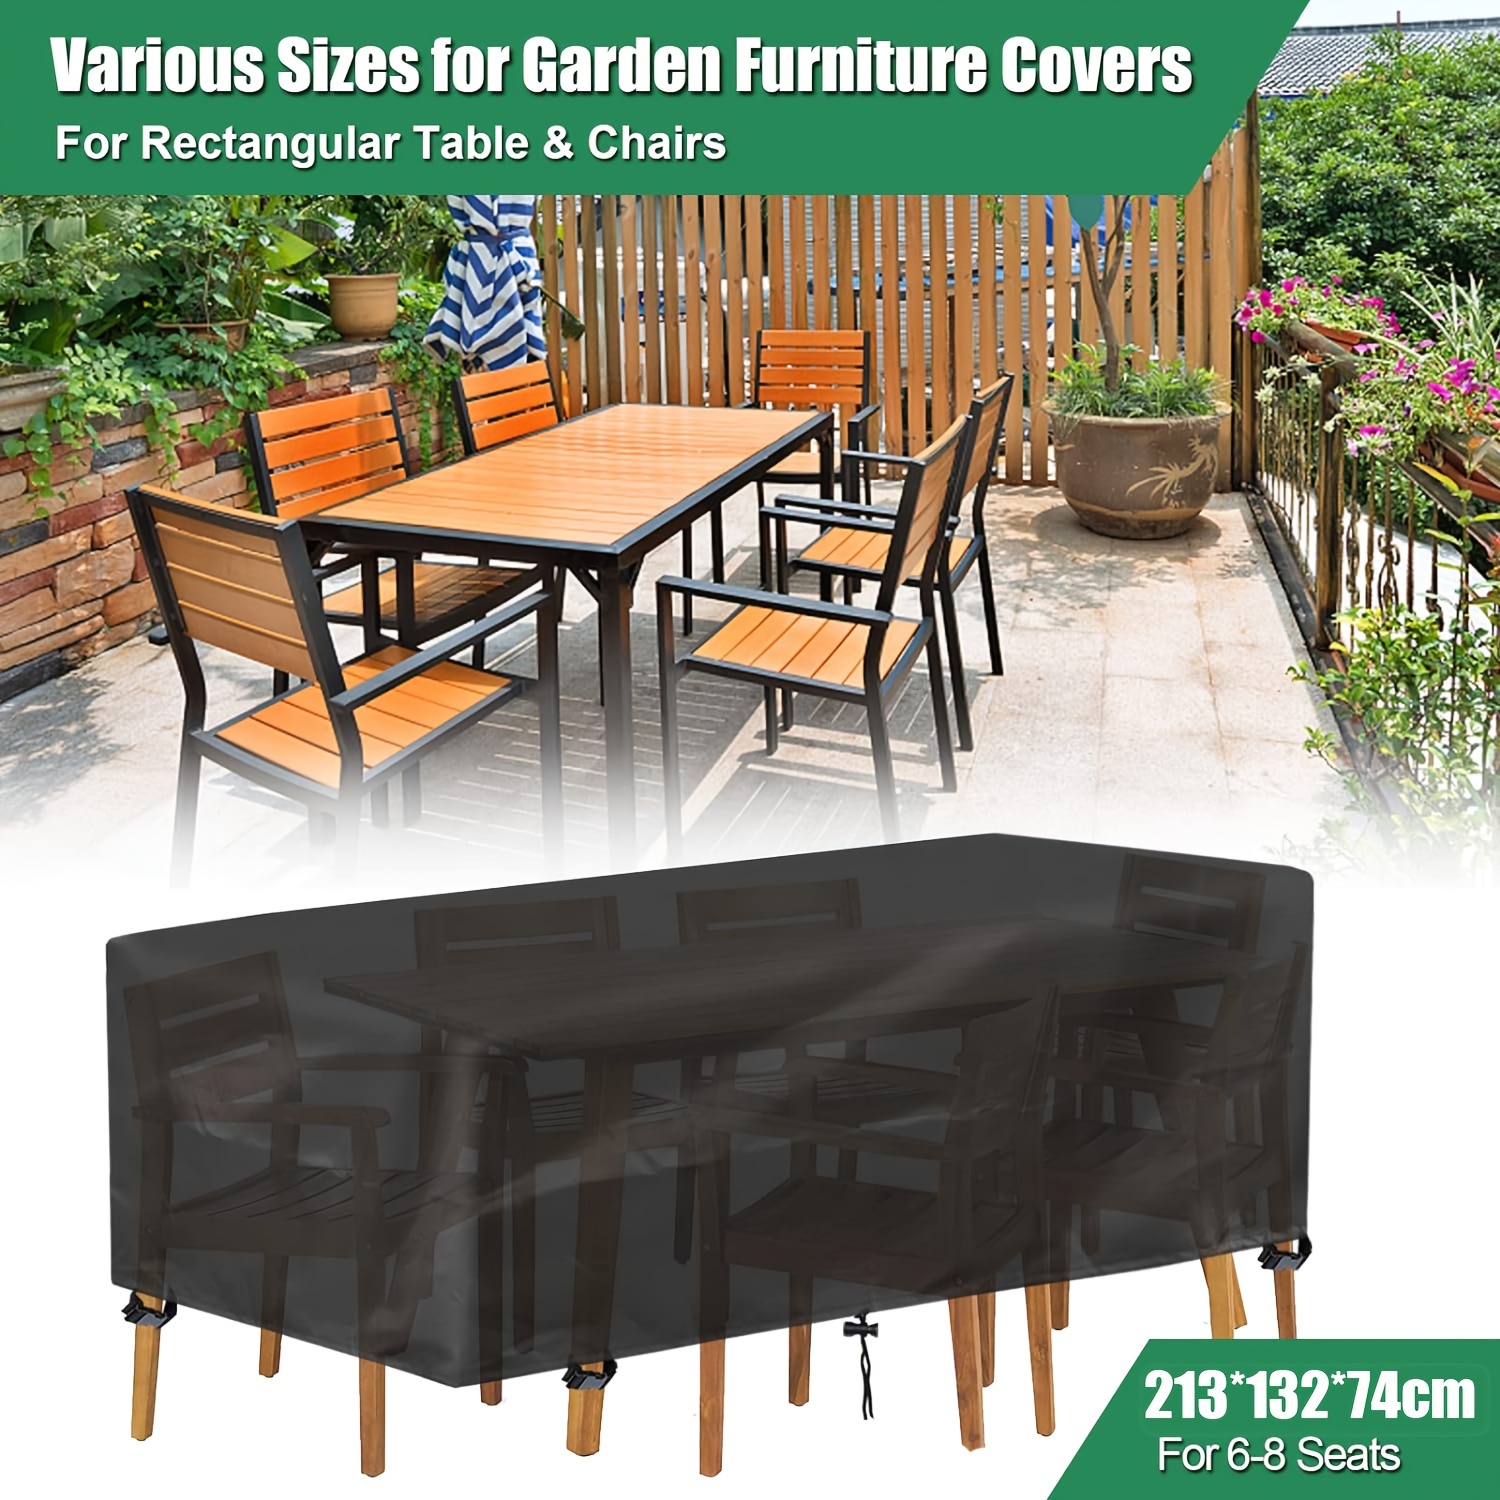 

Housses de meubles de jardin rectangulaires : Étanches 213x132x74cm - Adaptées pour 6-8 places - Protège de la pluie et du soleil - Fabriquées en polyester durable